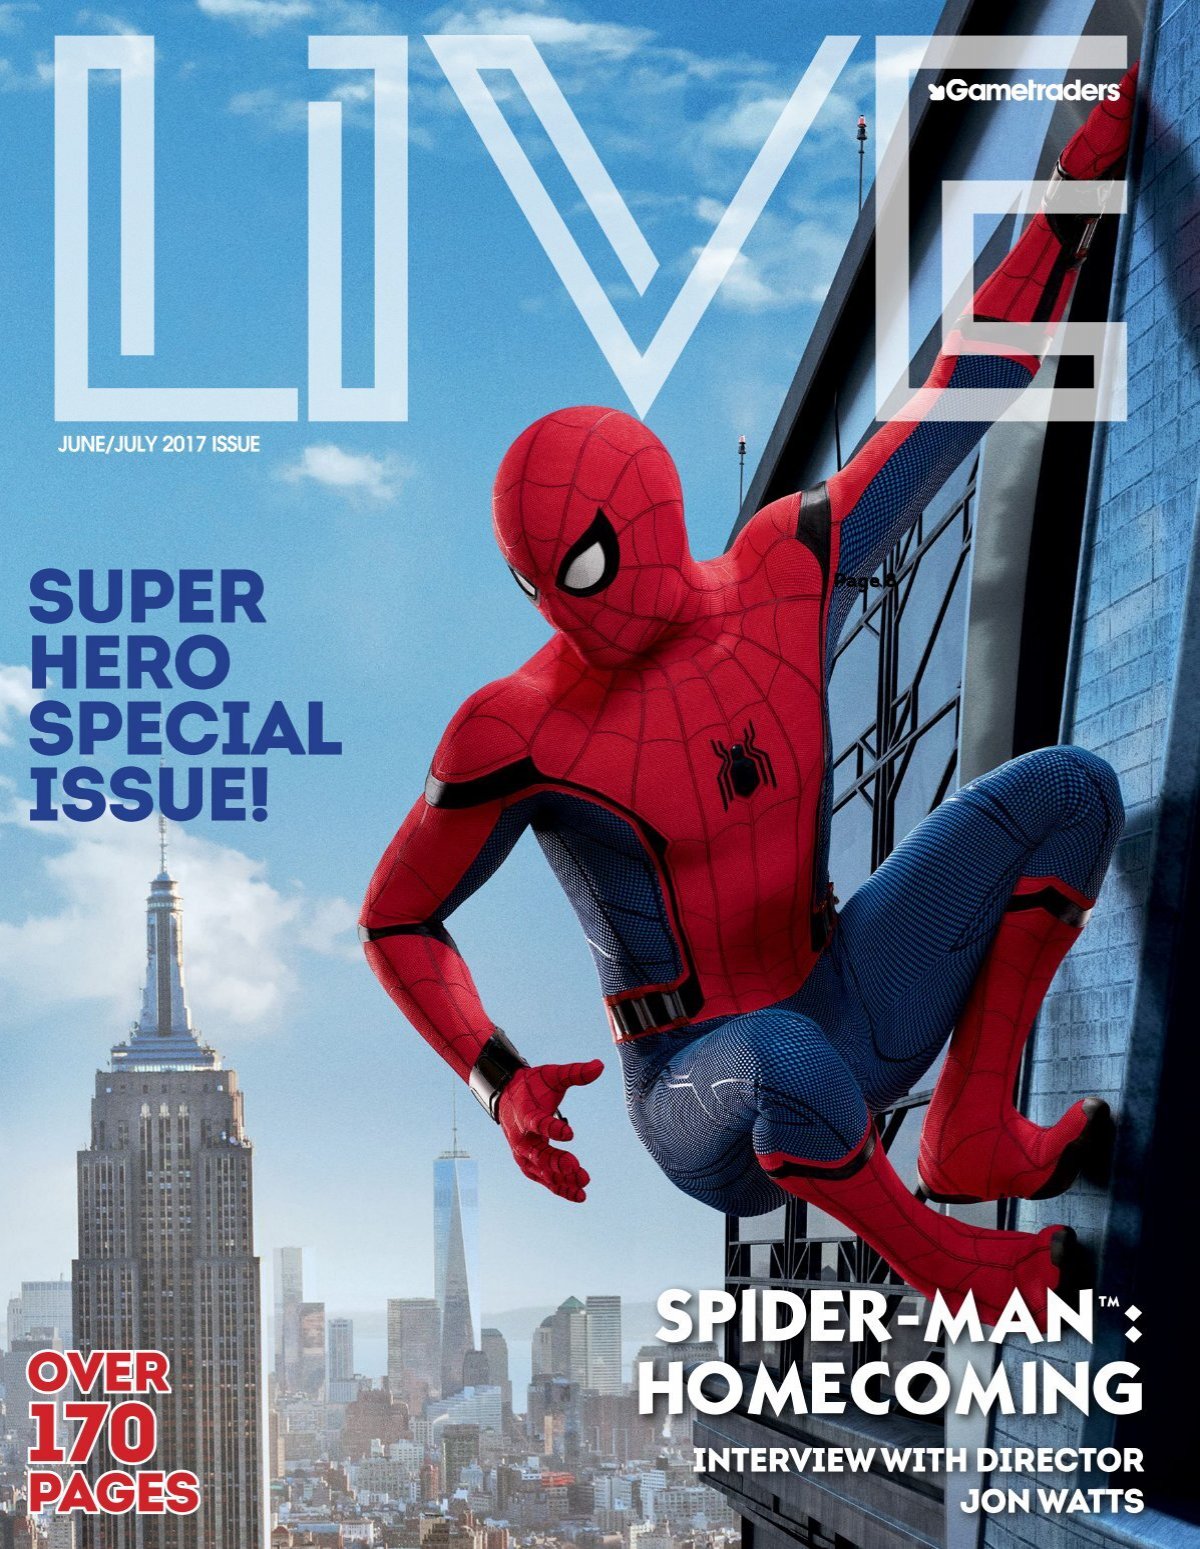 Spider-Man 2 Star Yuri Lowenthal Talks Tony Todd And Fan Love